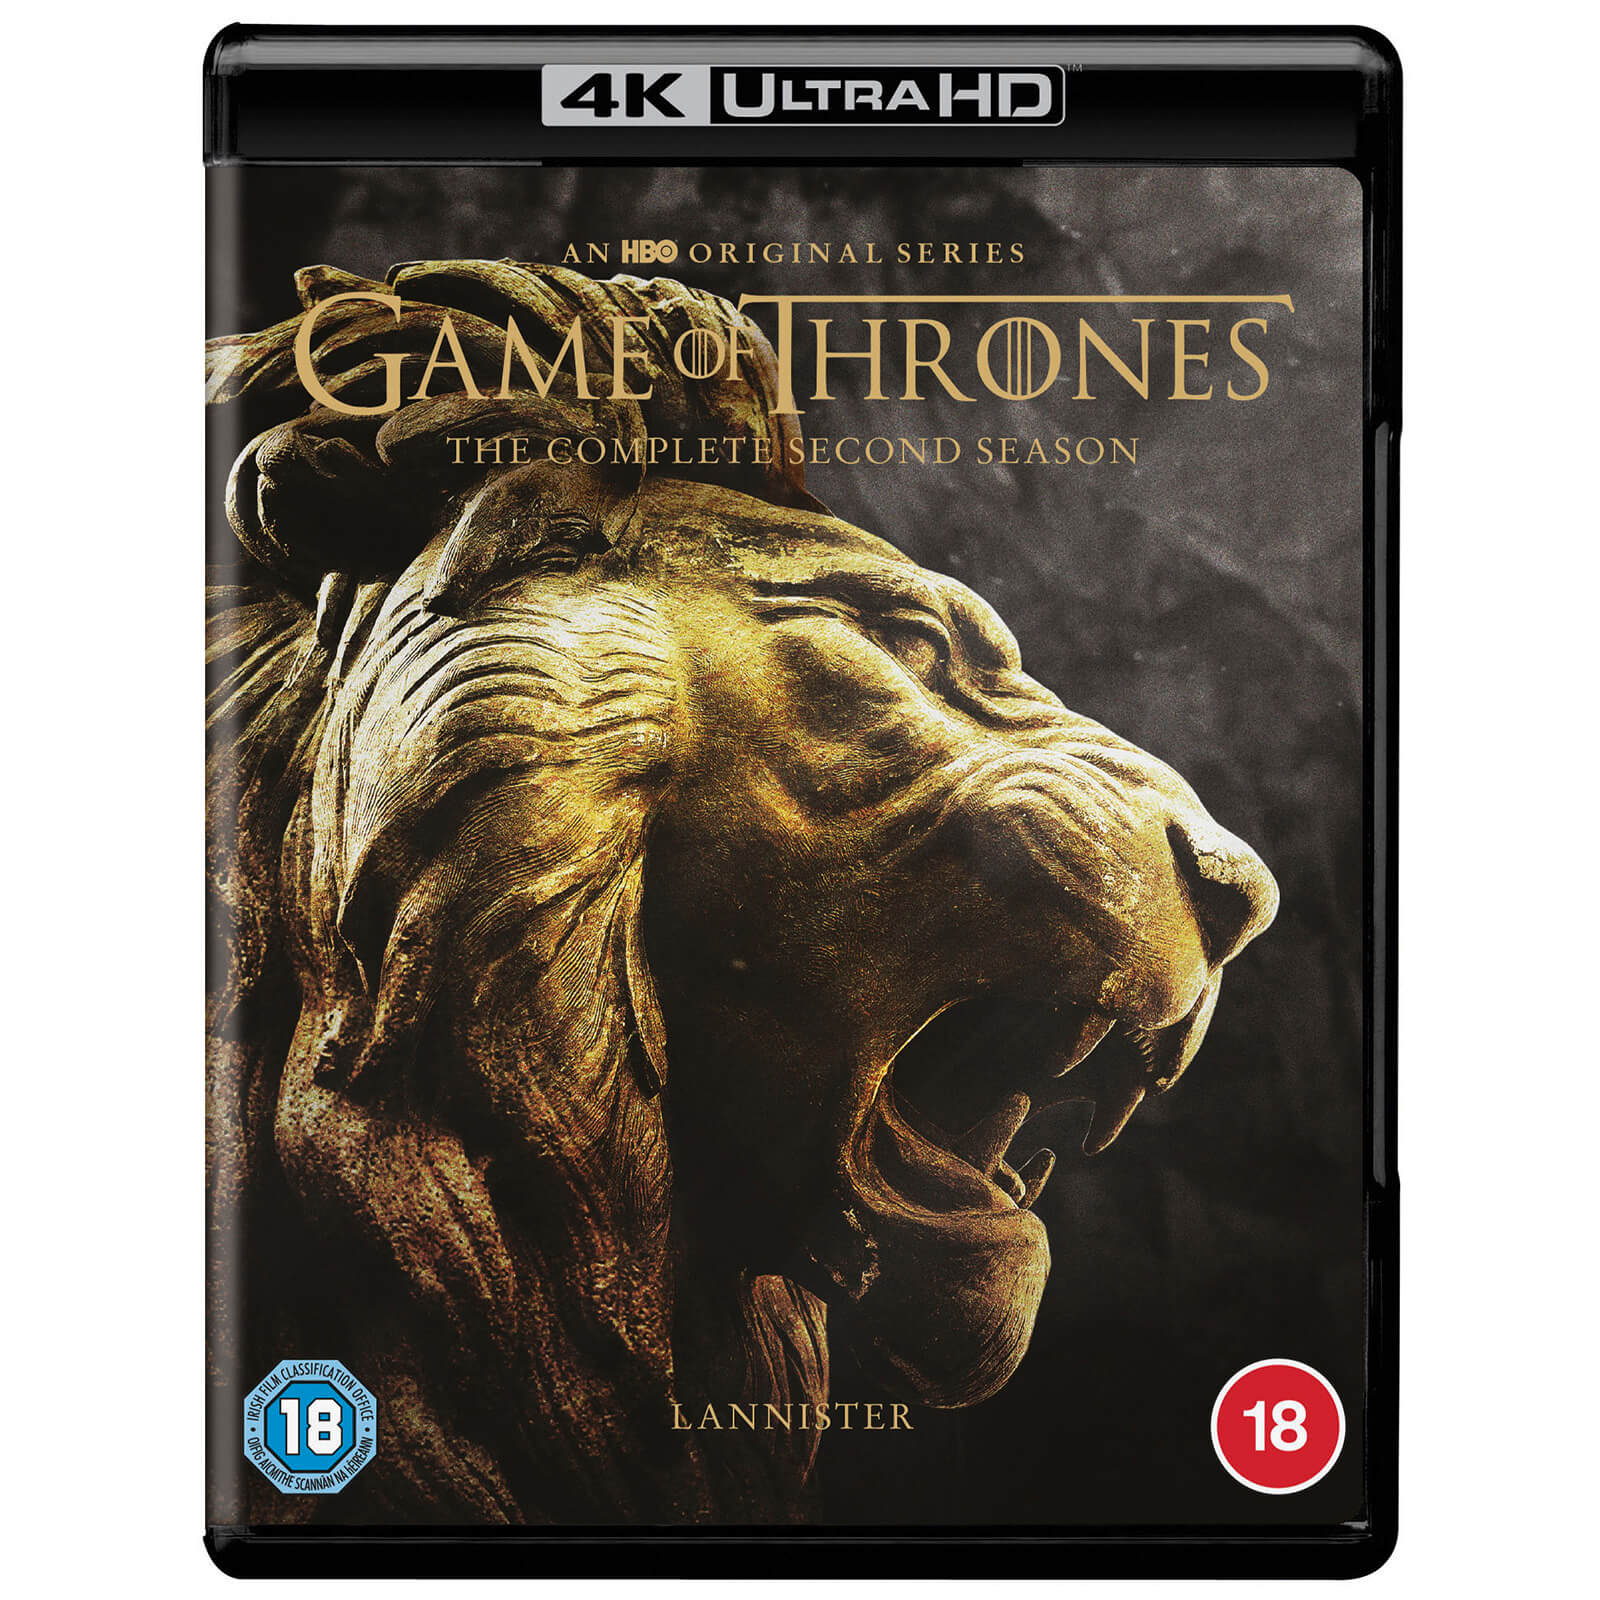 Bild von Game of Thrones: Staffel 2 - 4K Ultra HD